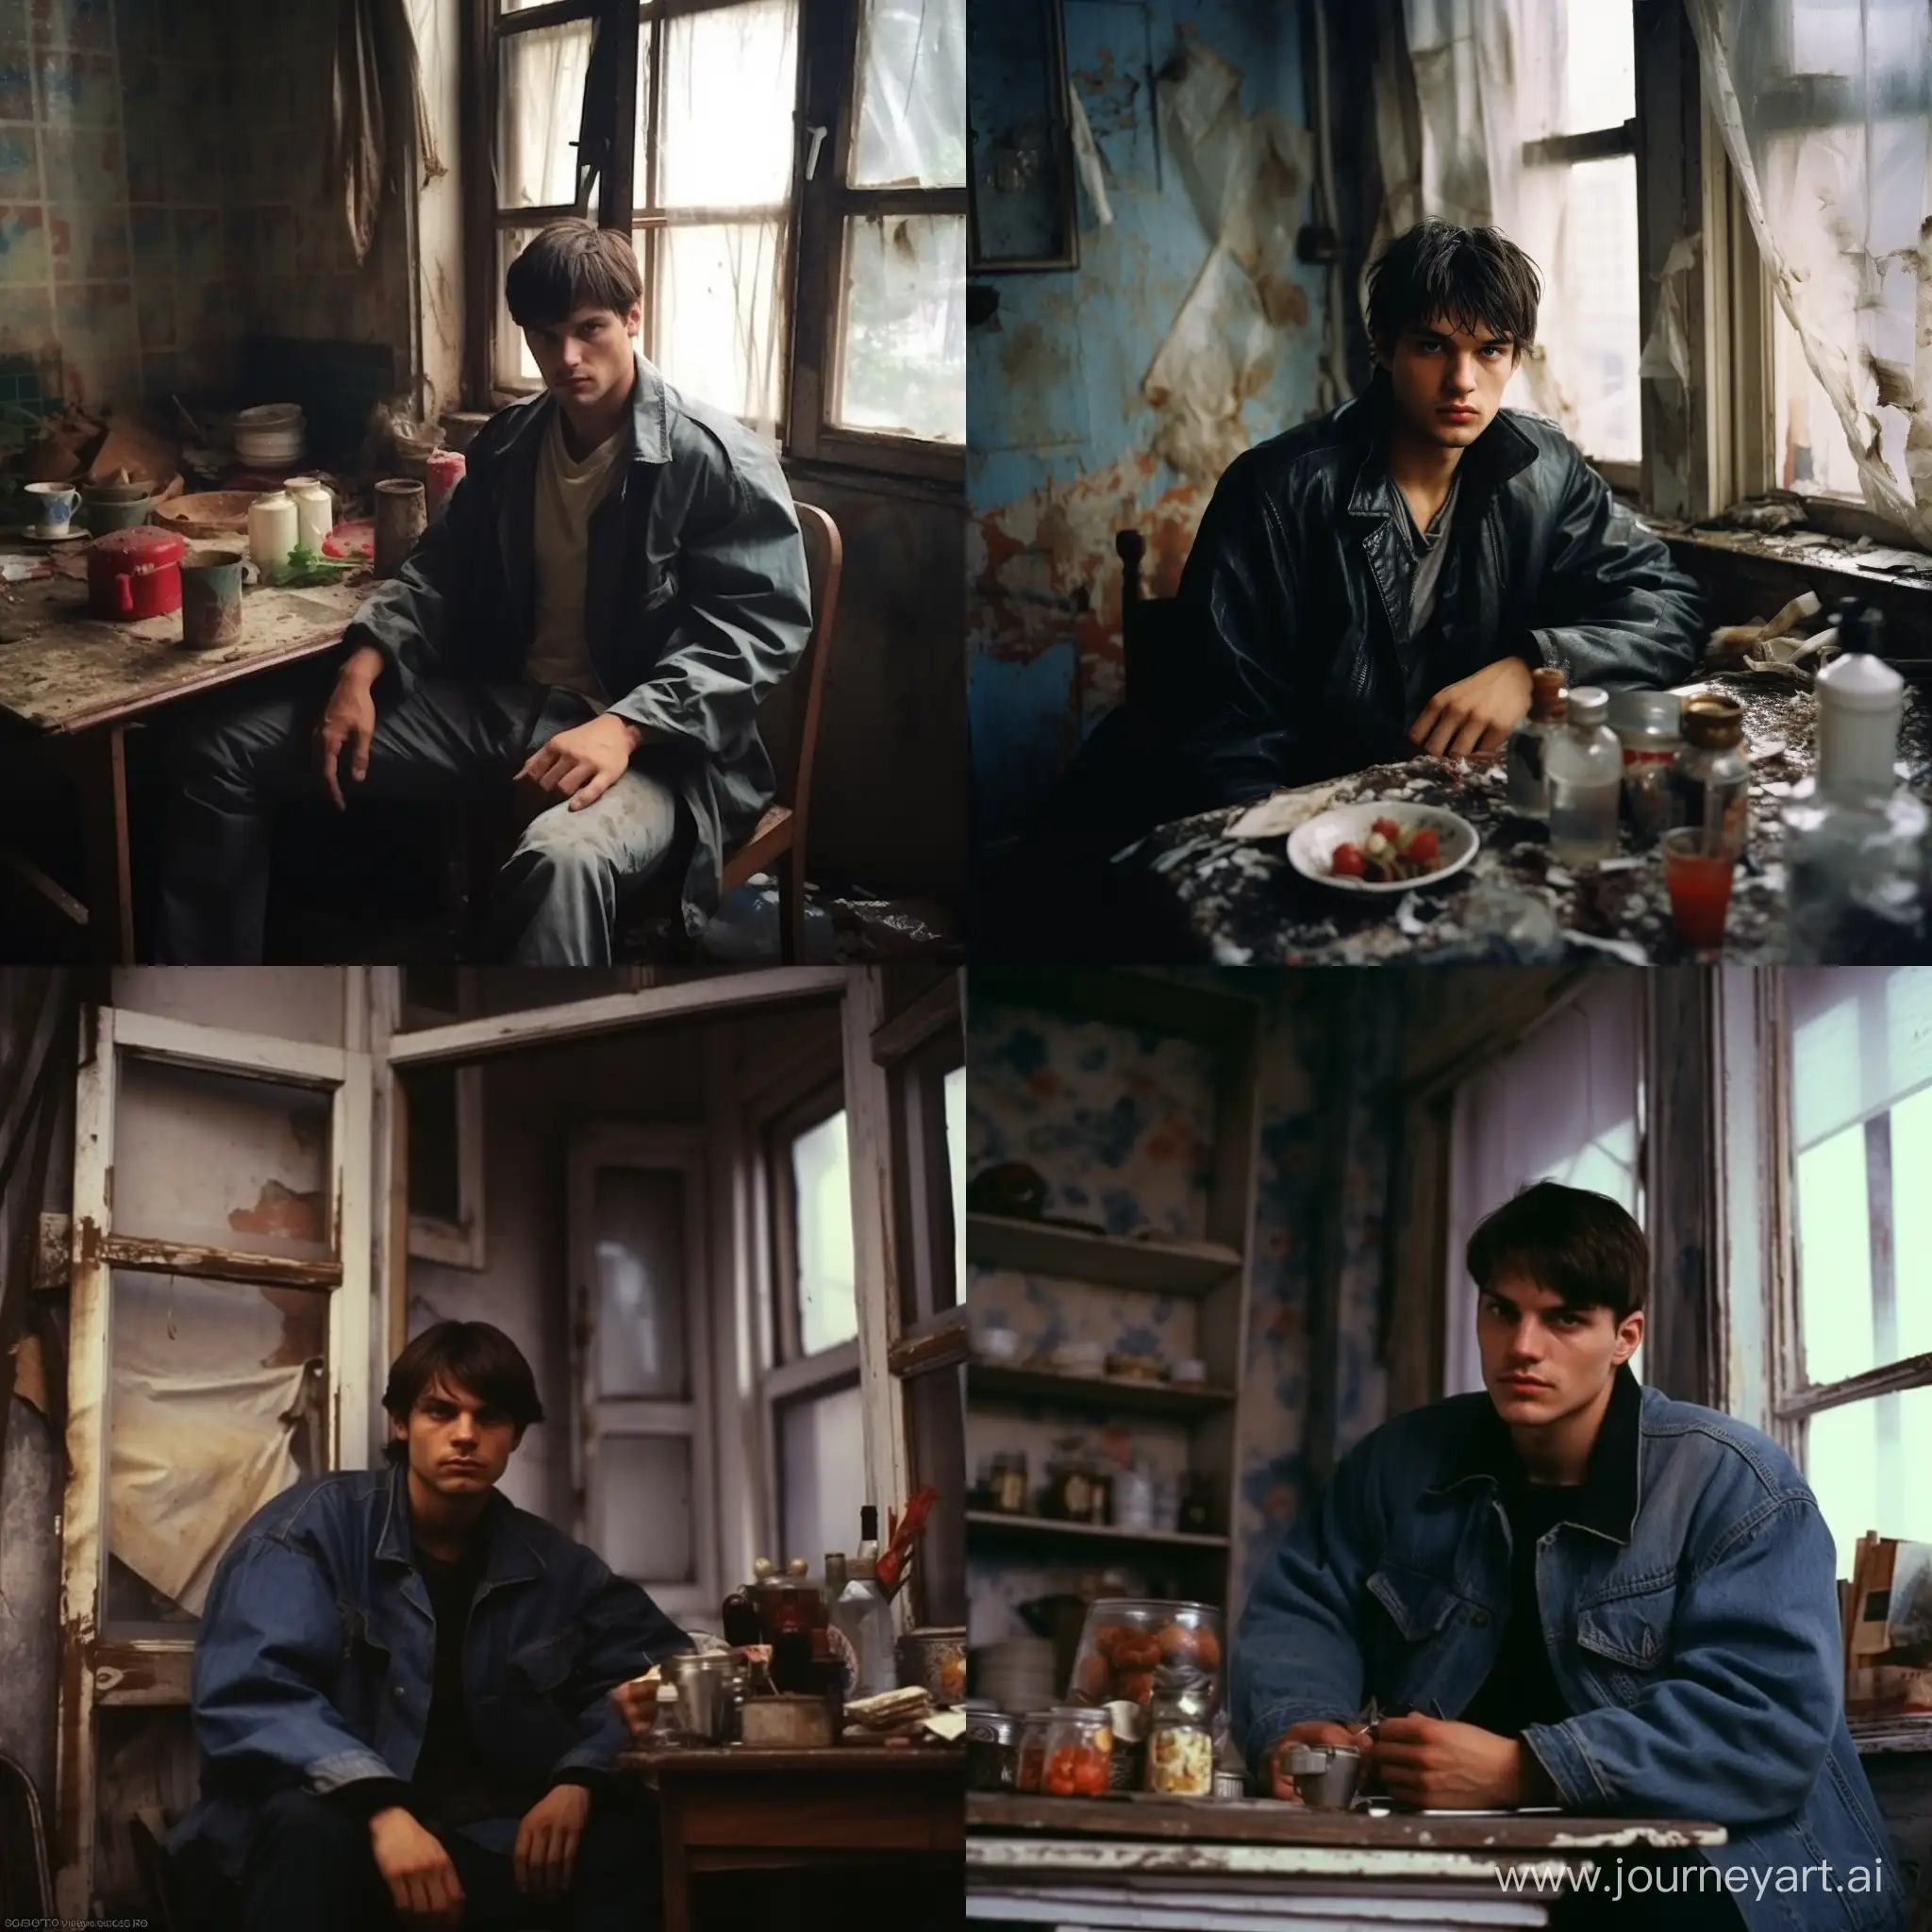 Ashton-Kutcher-Embraces-1990s-Nostalgia-in-Rainy-Soviet-Apartment-Scene